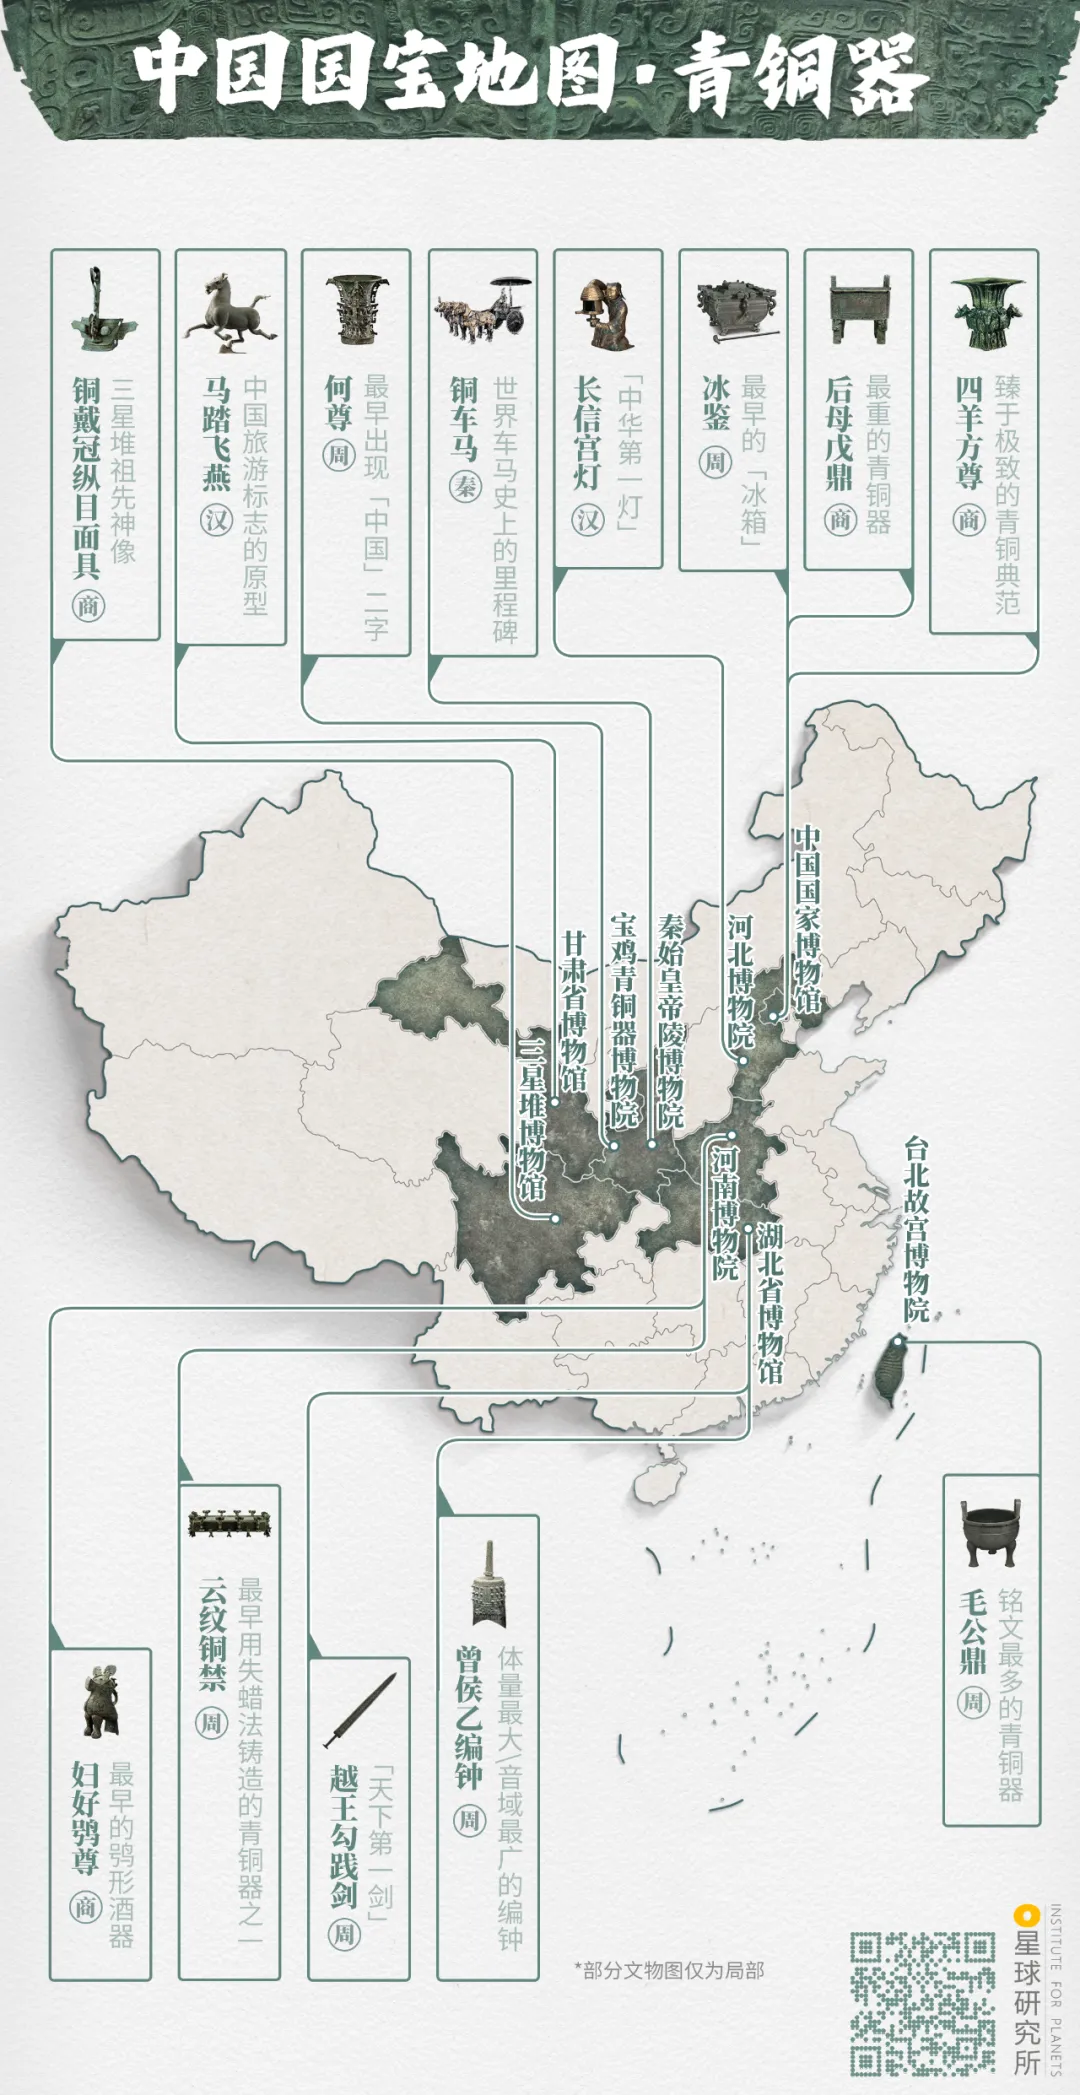 转贴 中国国宝地图 万维读者网博客